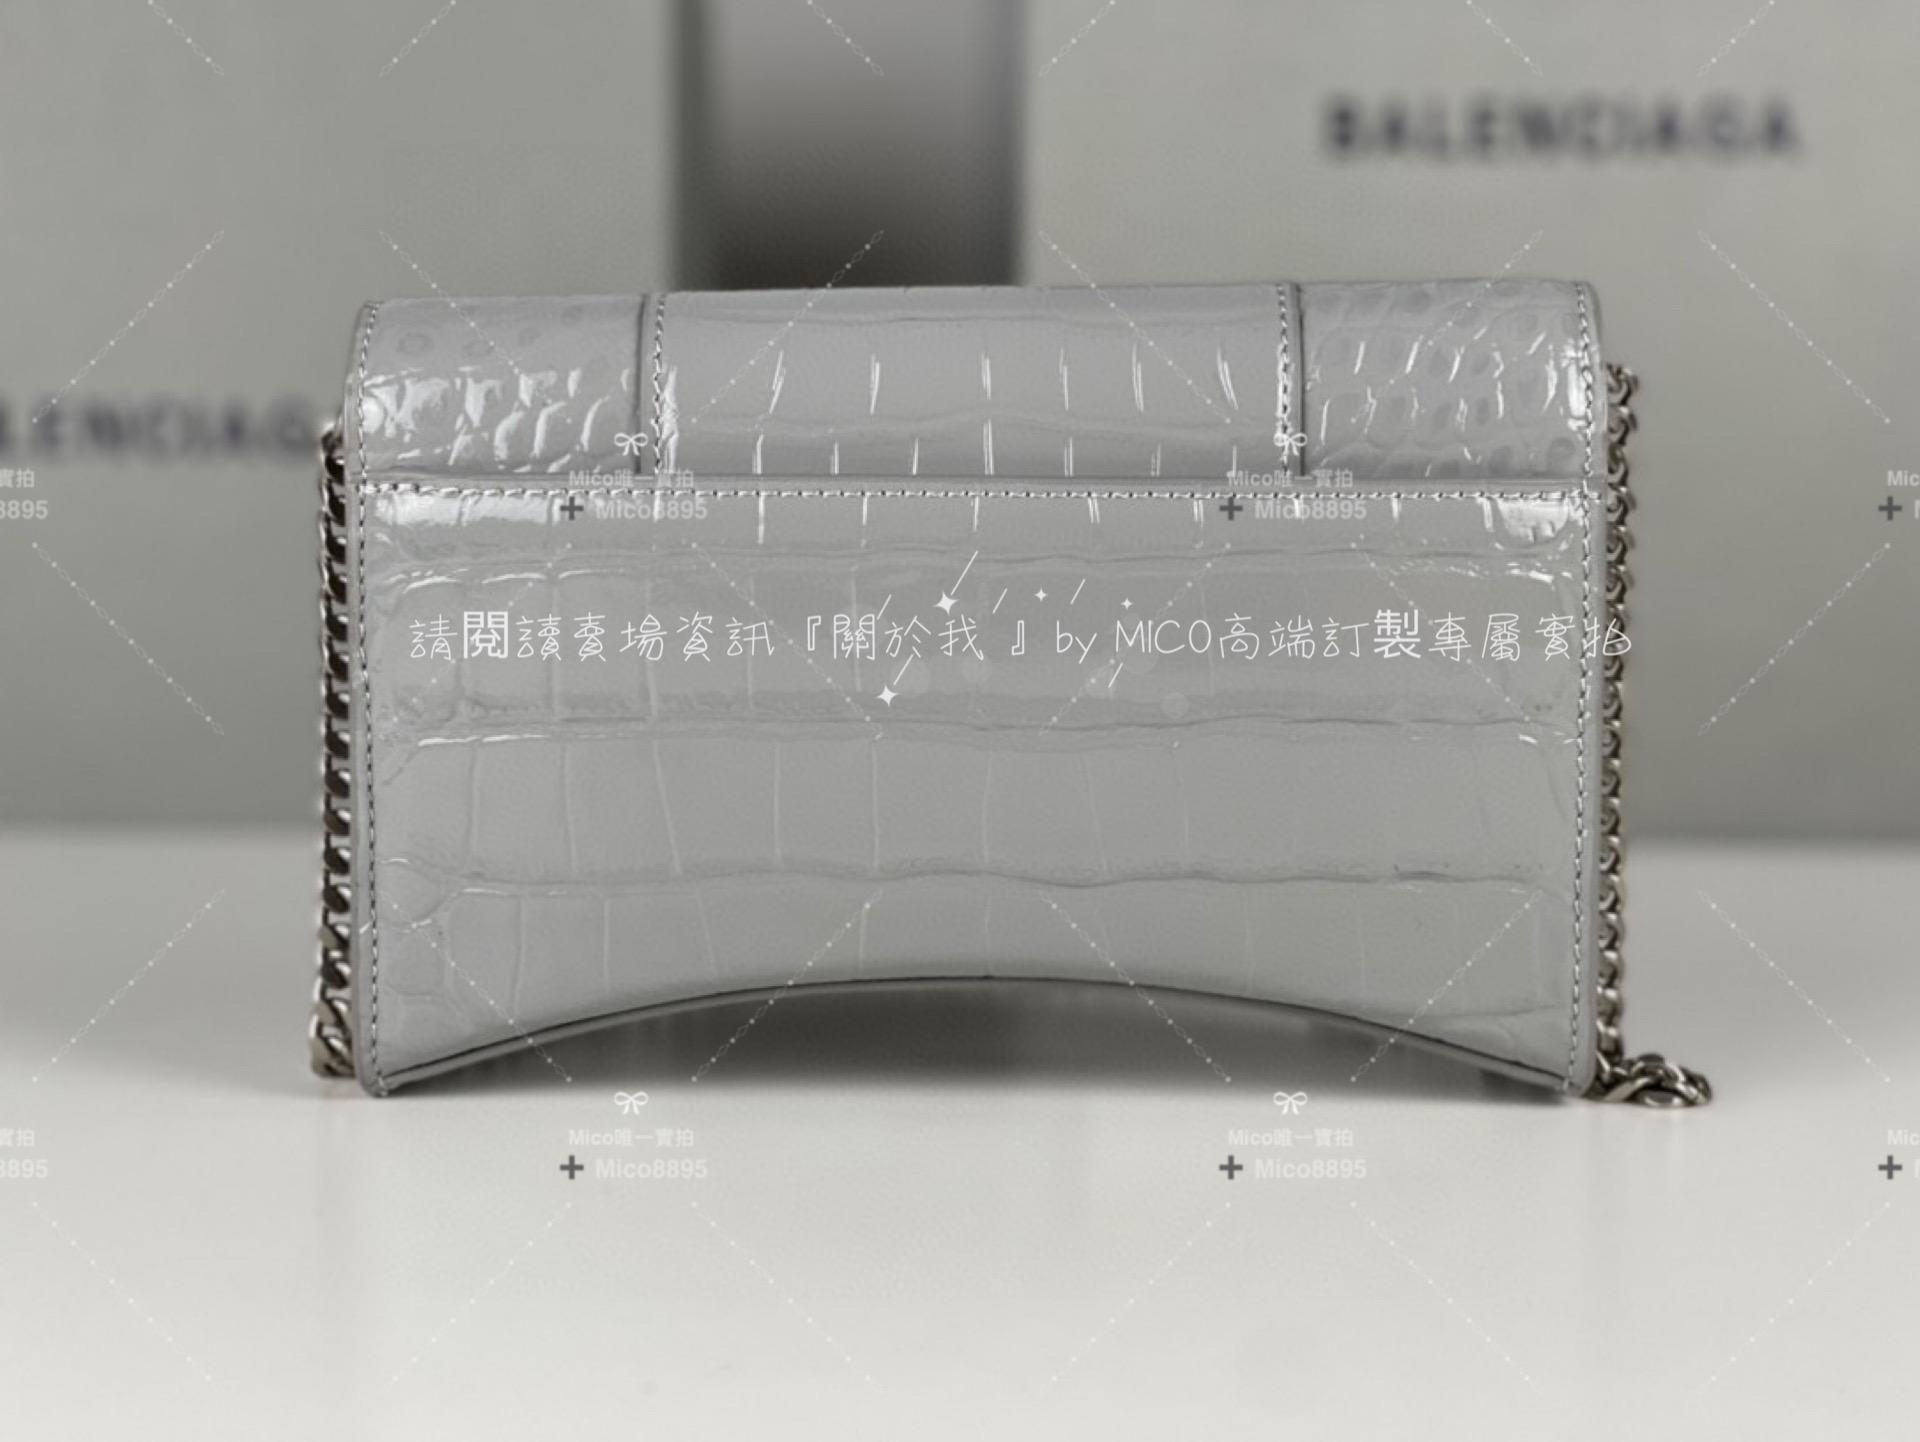 Balenciaga 鱷魚壓紋 深灰色/銀釦 WOC 沙漏包/鍊條包/錢包 19cm